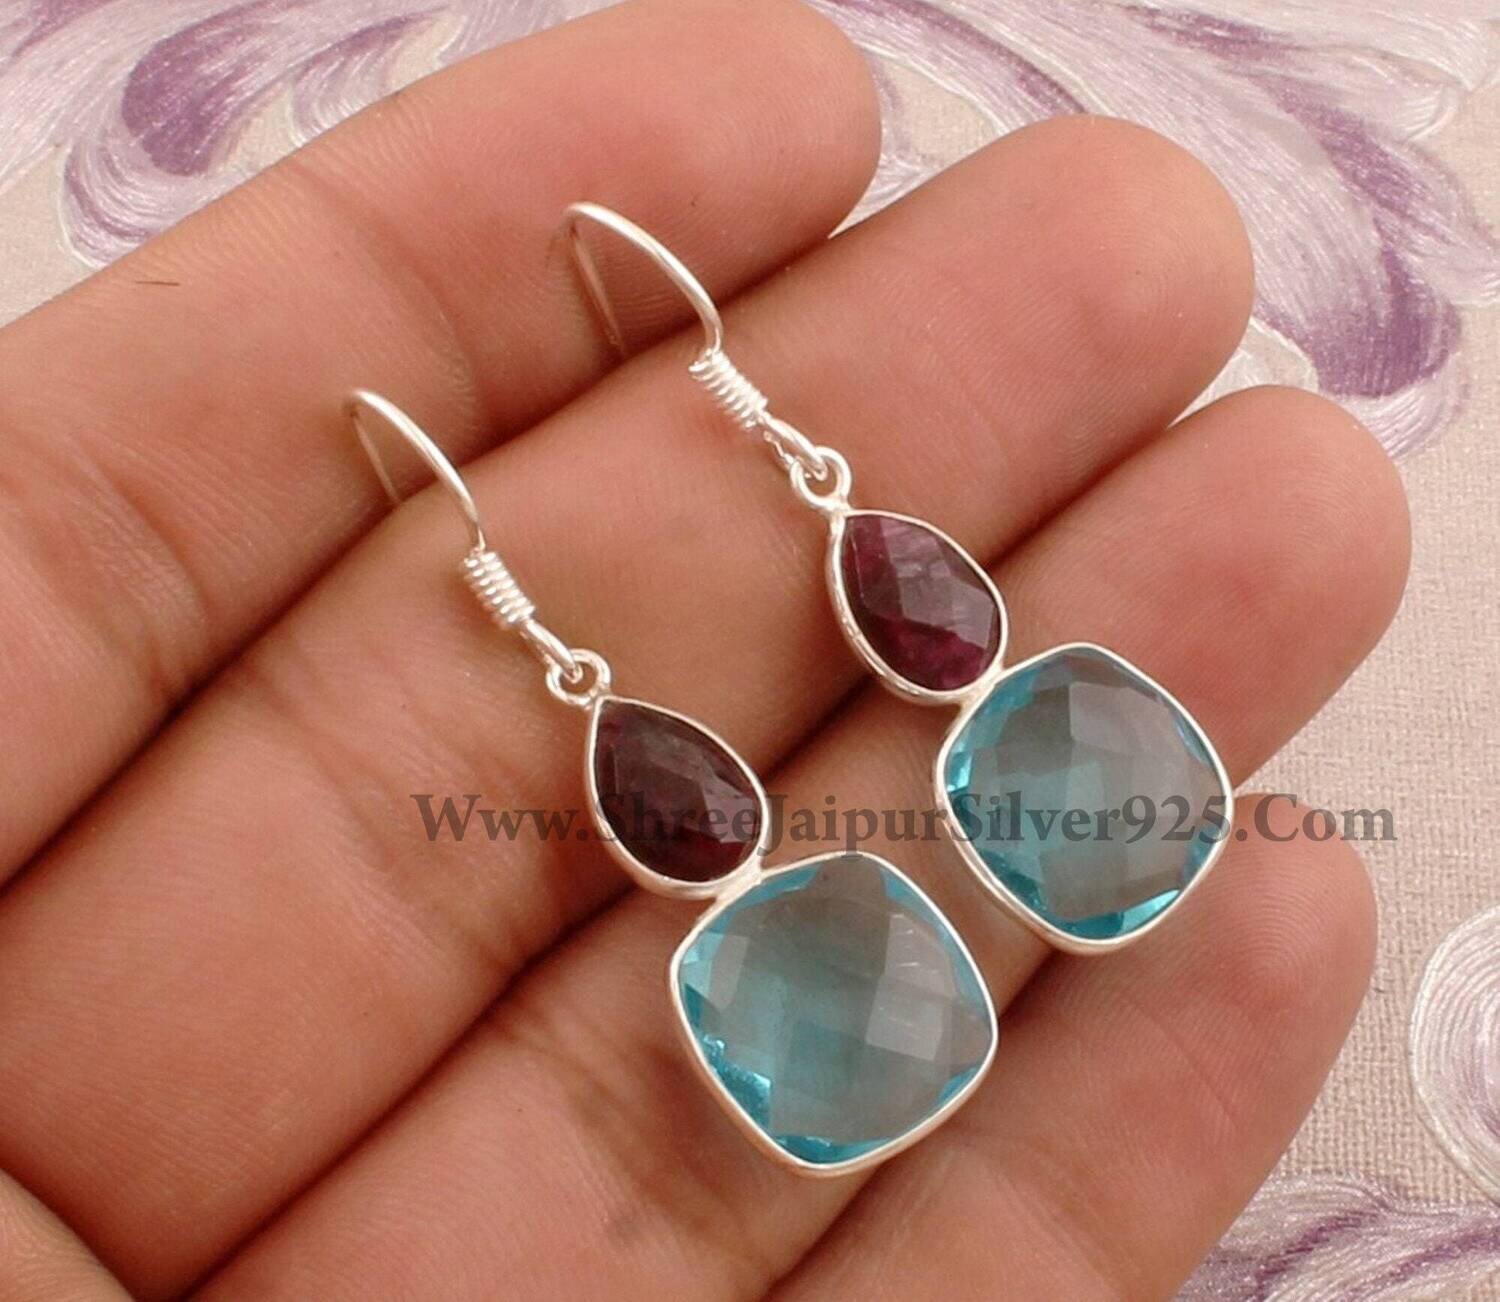 Combo Gemstone Earring Blue Topaz+Ruby Gemstone Earring 925-Sterling Silver Earring Big Size Two Stone Earring Long Gift EarringCyber2021